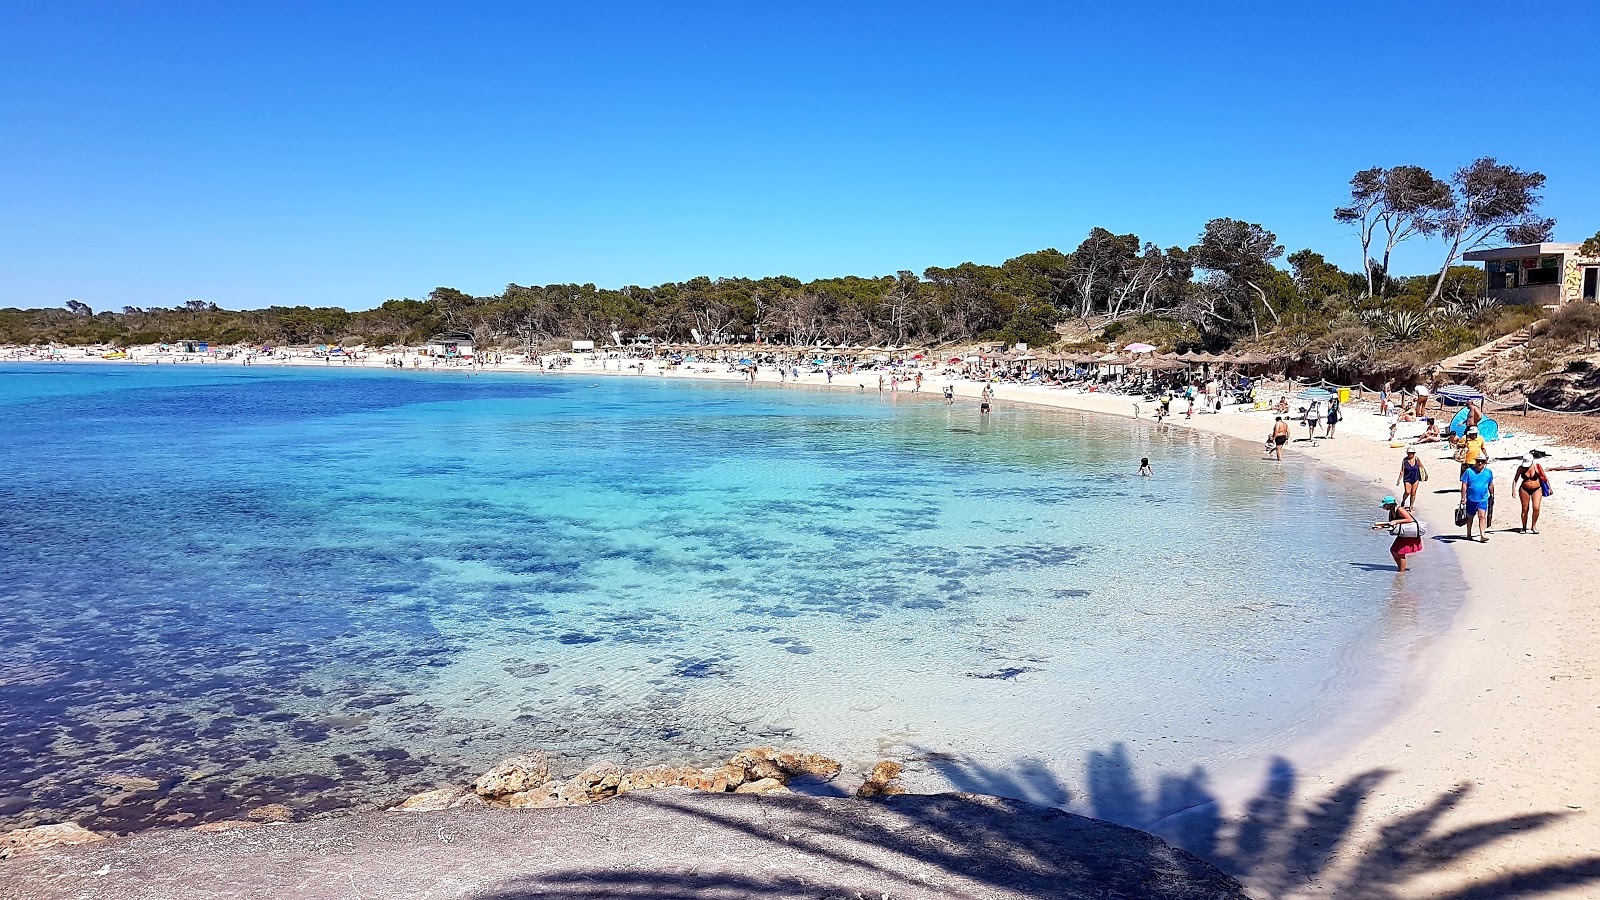 Fotografie cu Plaja Moli de s'Estany - locul popular printre cunoscătorii de relaxare